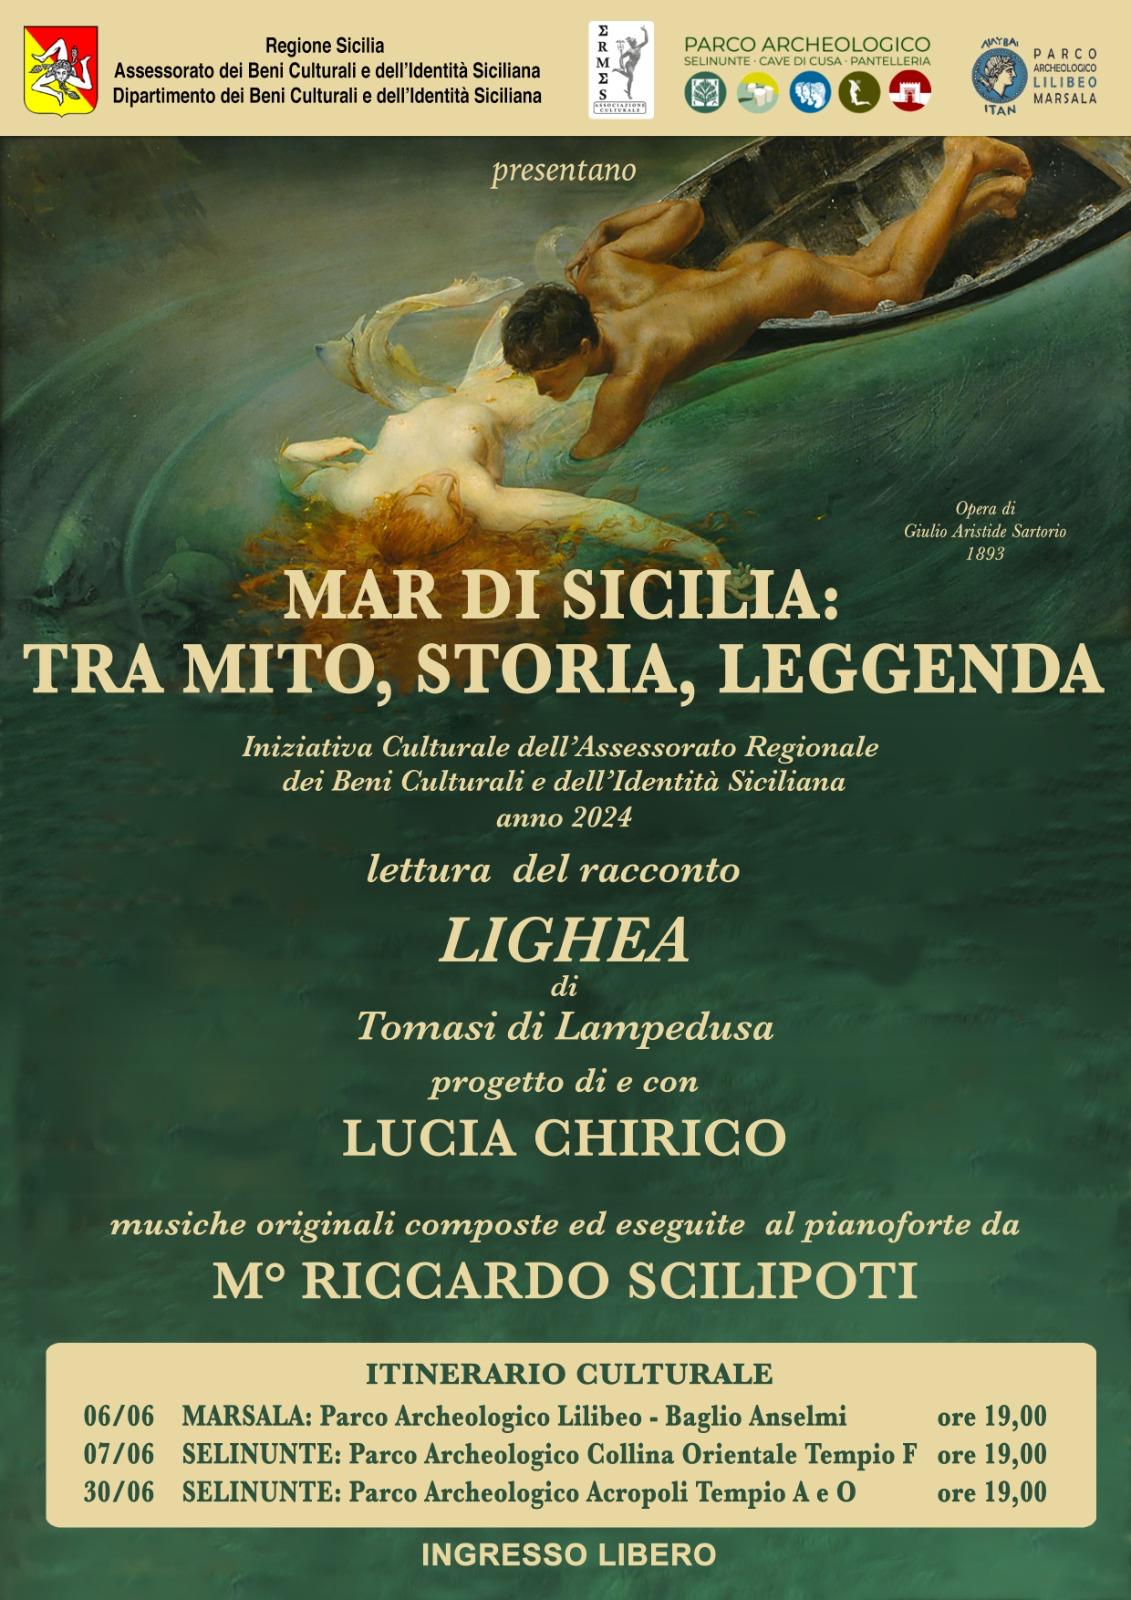 Al Parco Lilibeo i miti del Mare di Sicilia e il racconto Lichea